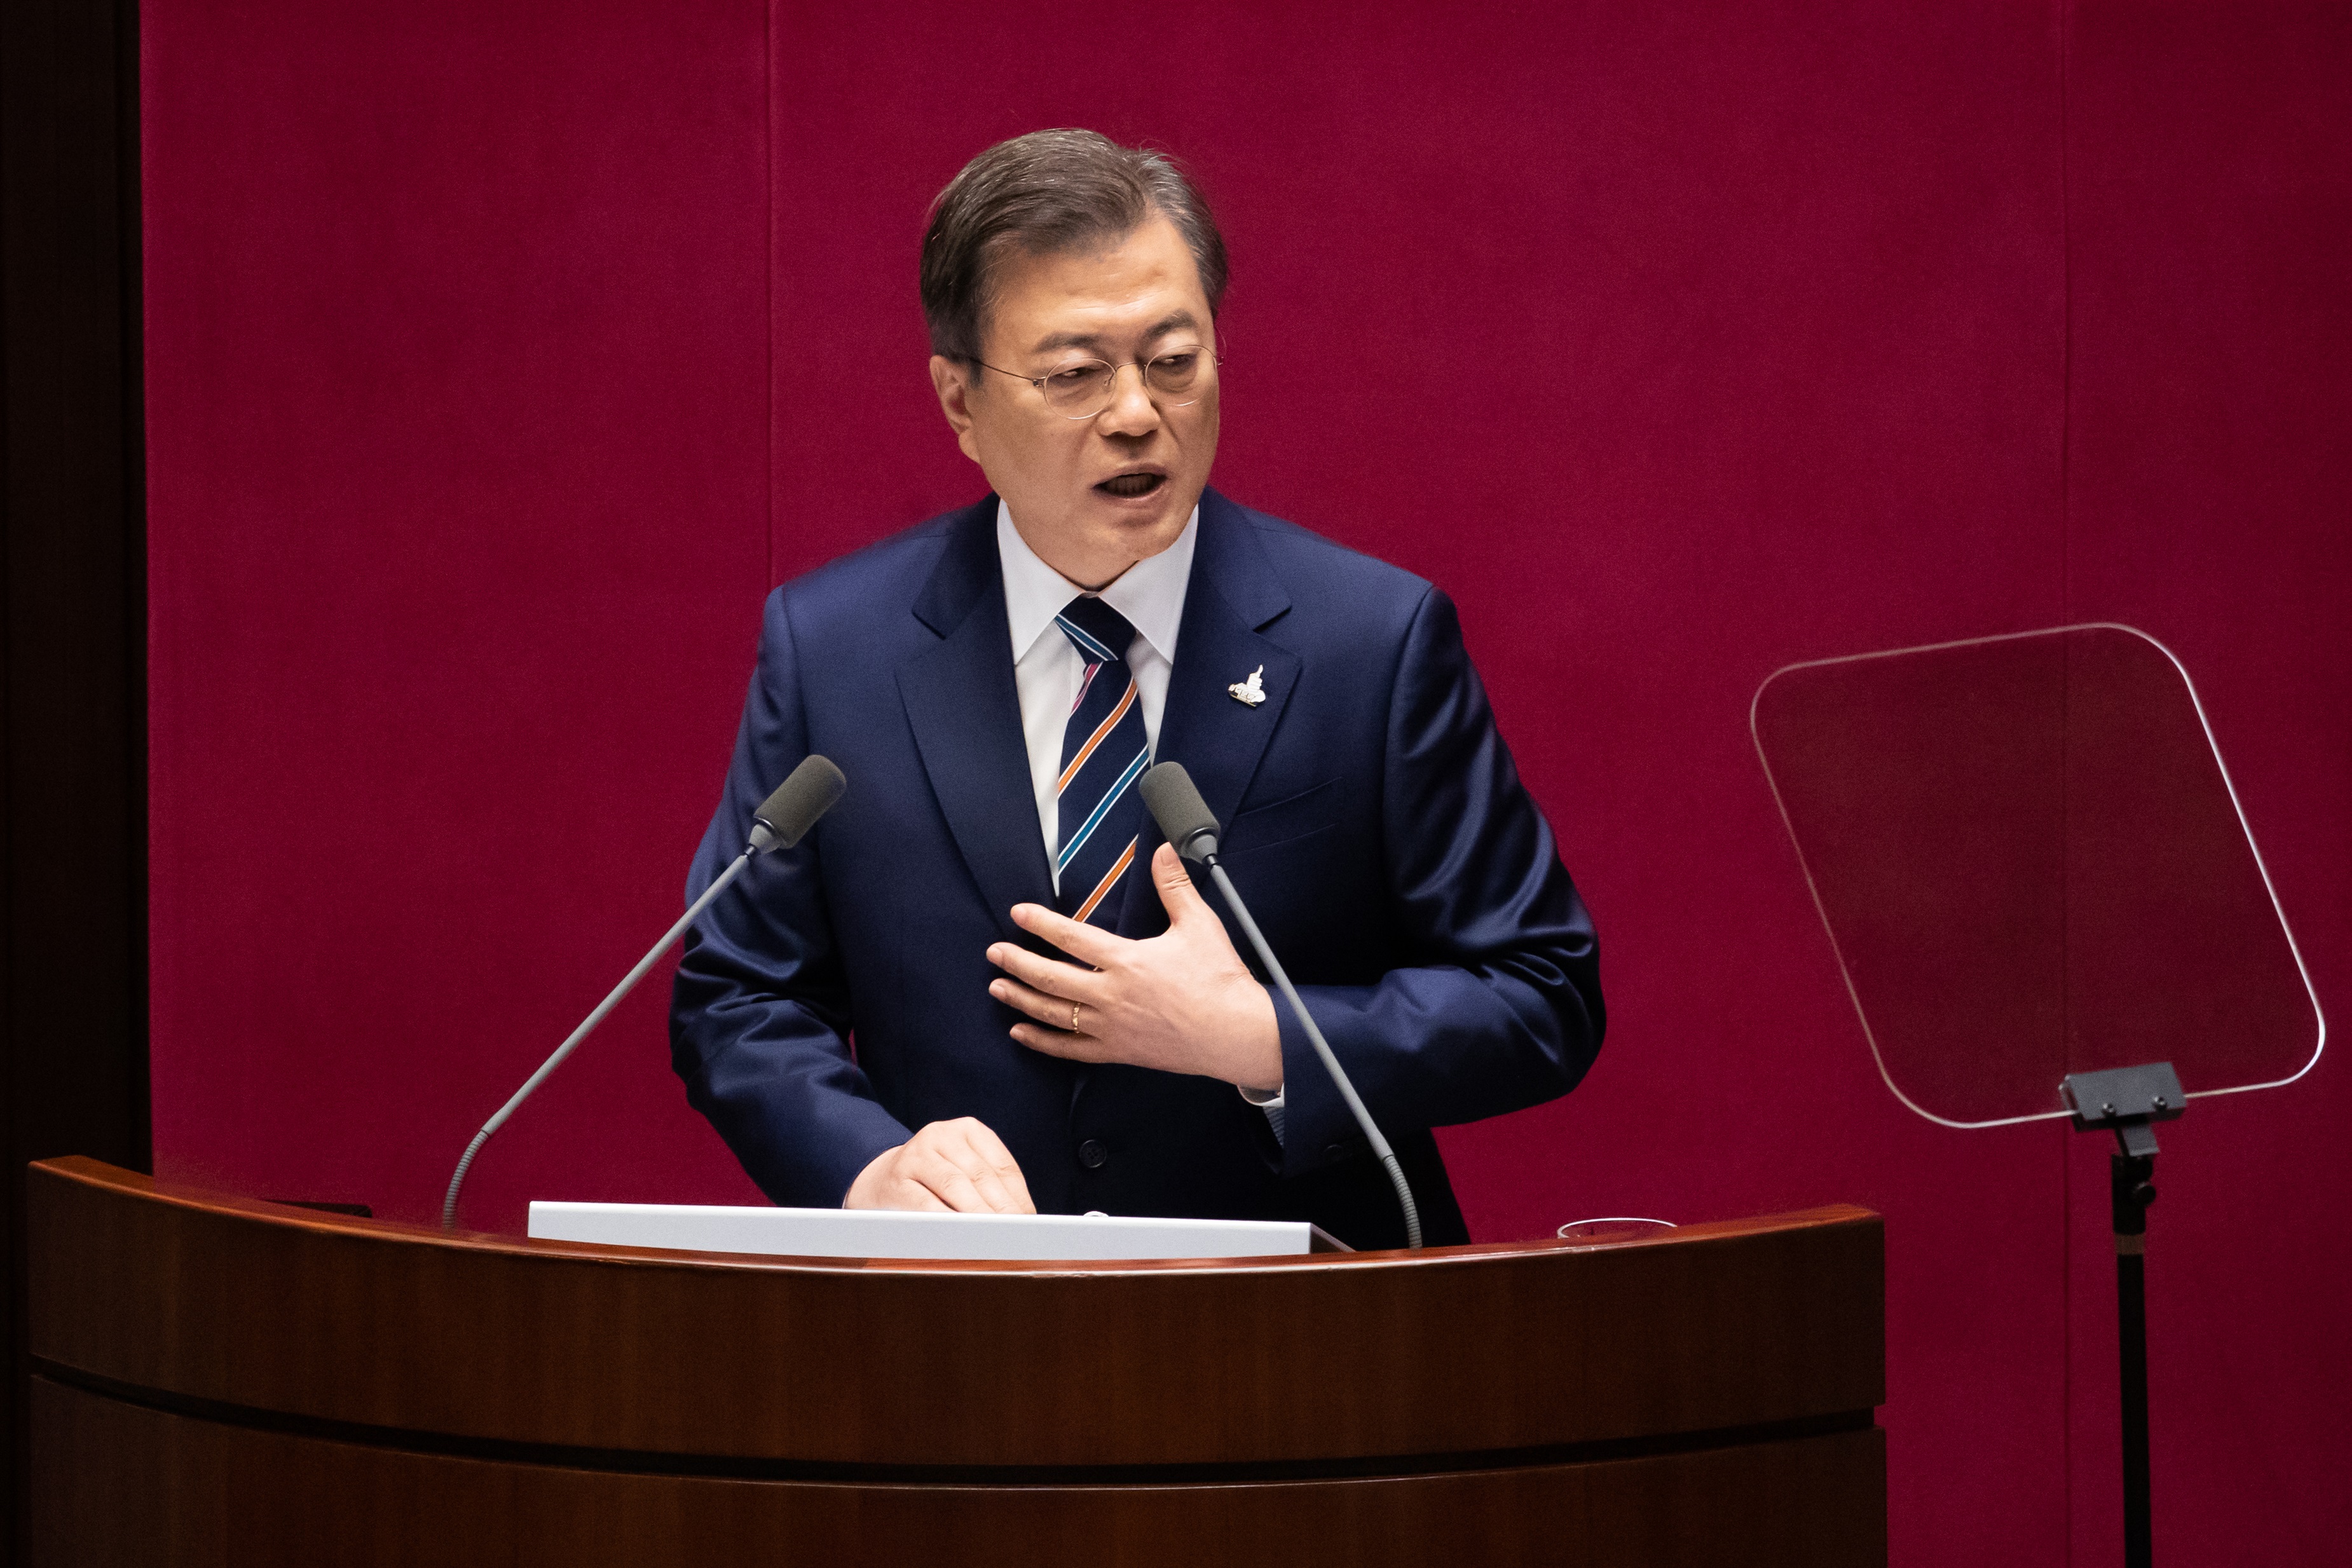 23/09/2020 El presidente de Corea del Sur, Moon Jae In.
POLITICA ASIA ASIA COREA DEL NORTE COREA DEL SUR ASIA INTERNACIONAL
POOL / ZUMA PRESS / CONTACTOPHOTO
